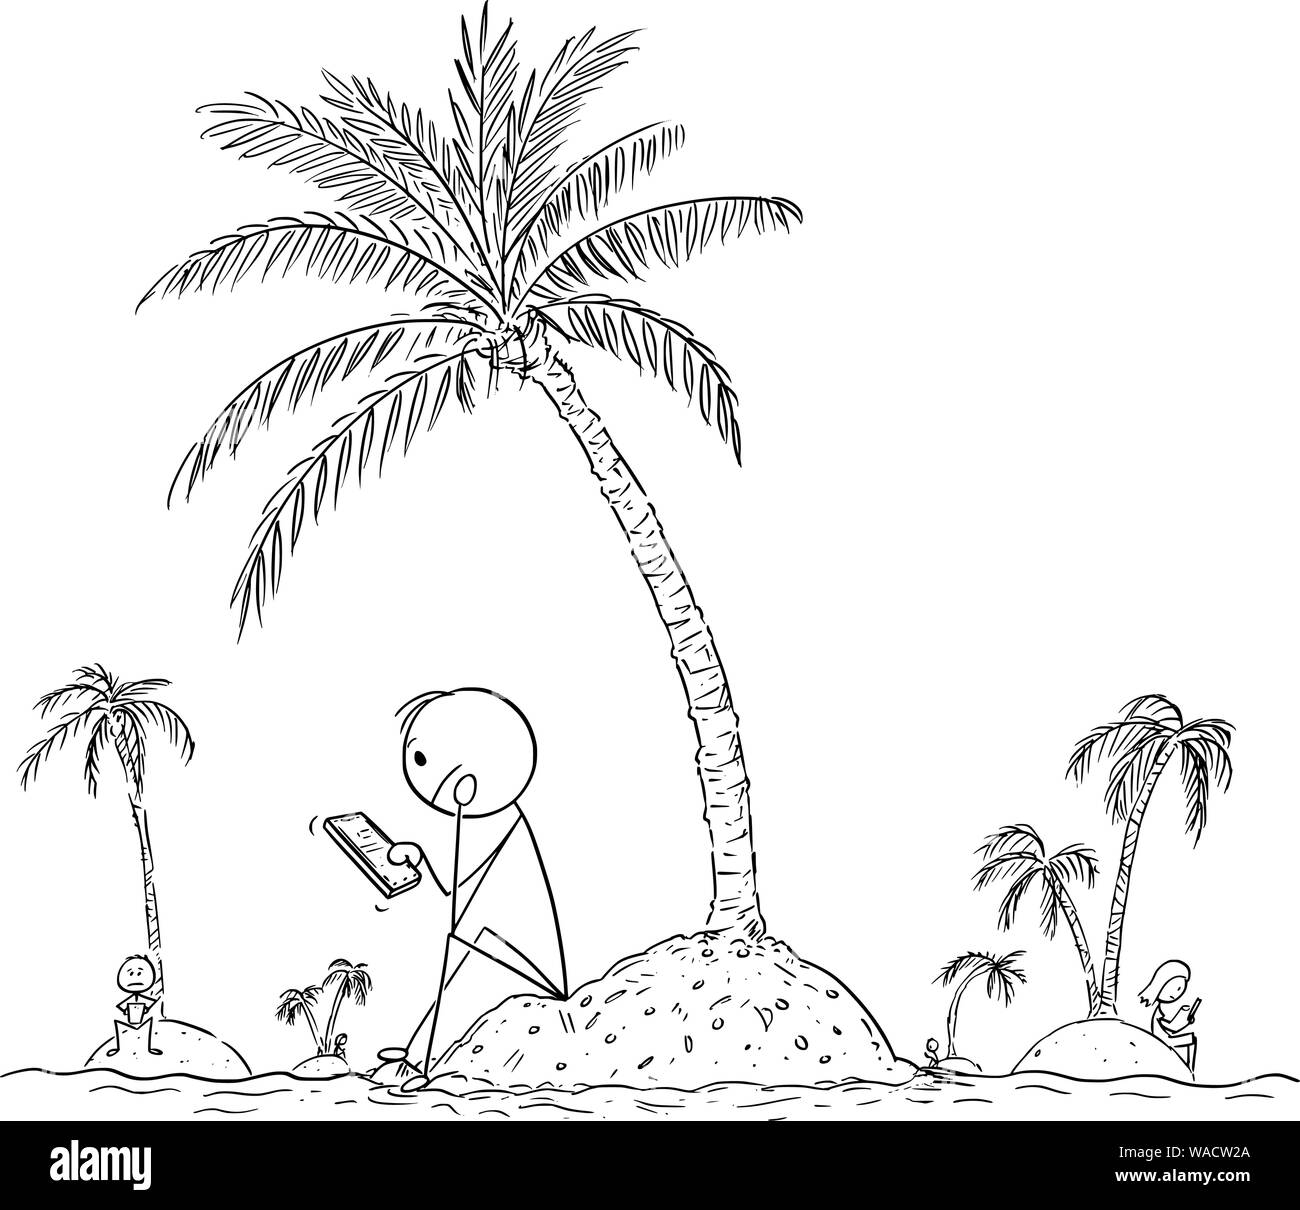 Vector cartoon stick figure dessin illustration conceptuelle de lonely gens assis seul sur les petites îles, l'aide en ligne de téléphone mobile ou téléphone cellulaire et d'utiliser les réseaux sociaux pour discuter avec d'amis virtuels. Illustration de Vecteur